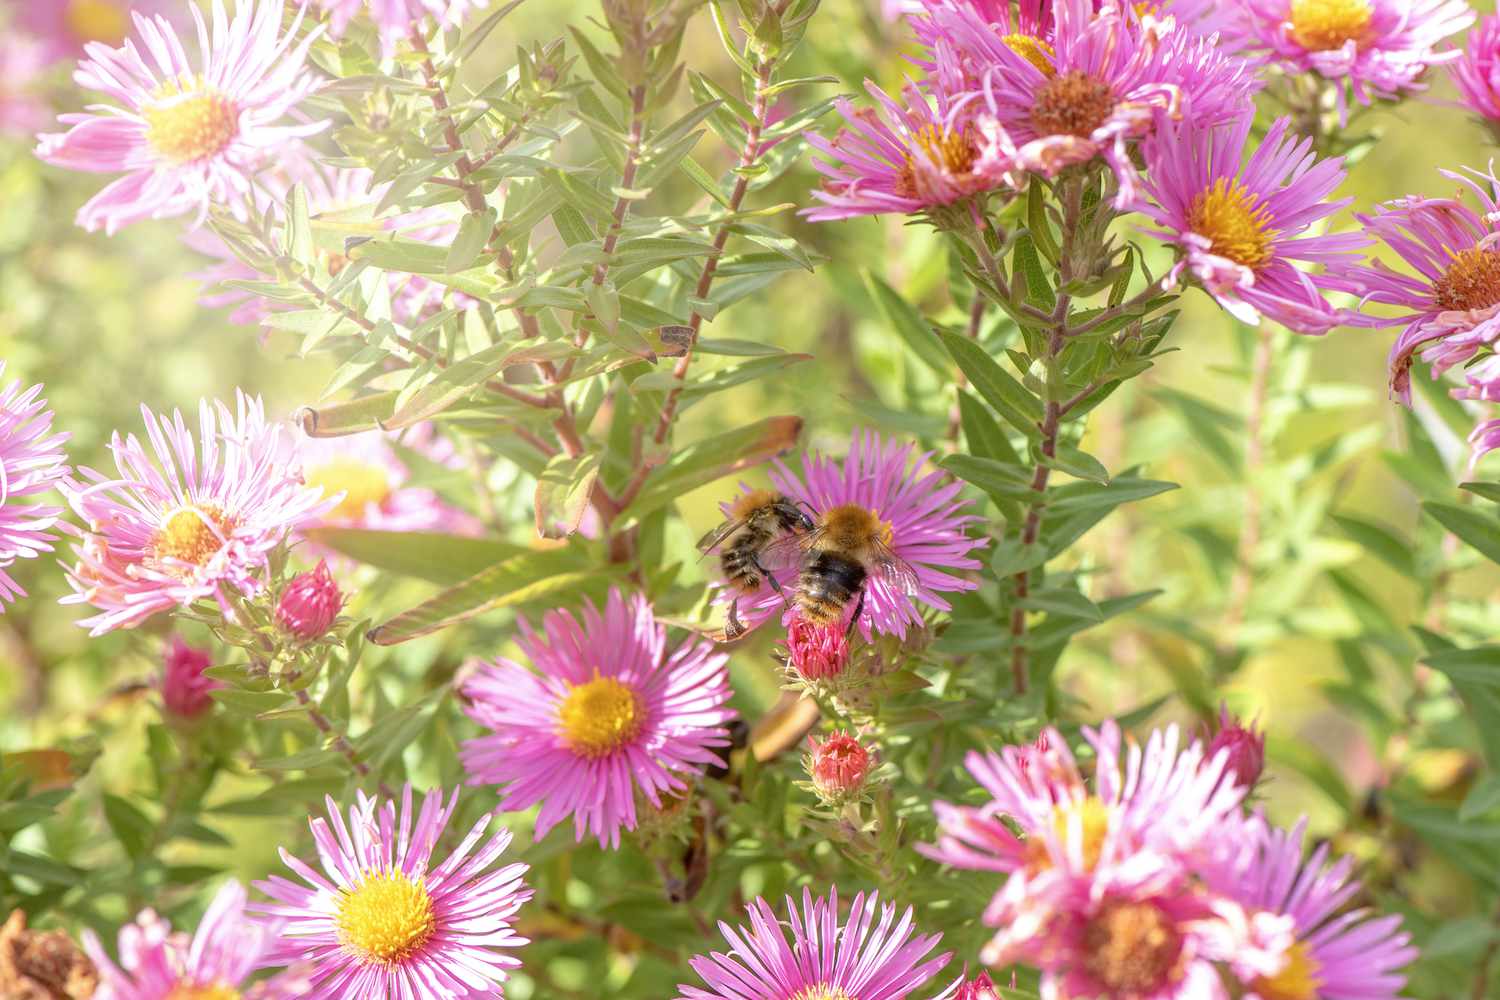 Lindas flores de Aster no final do verão, também conhecidas como Symphyotrichum ou Michaelmass Daisy, com uma abelha coletando pólen